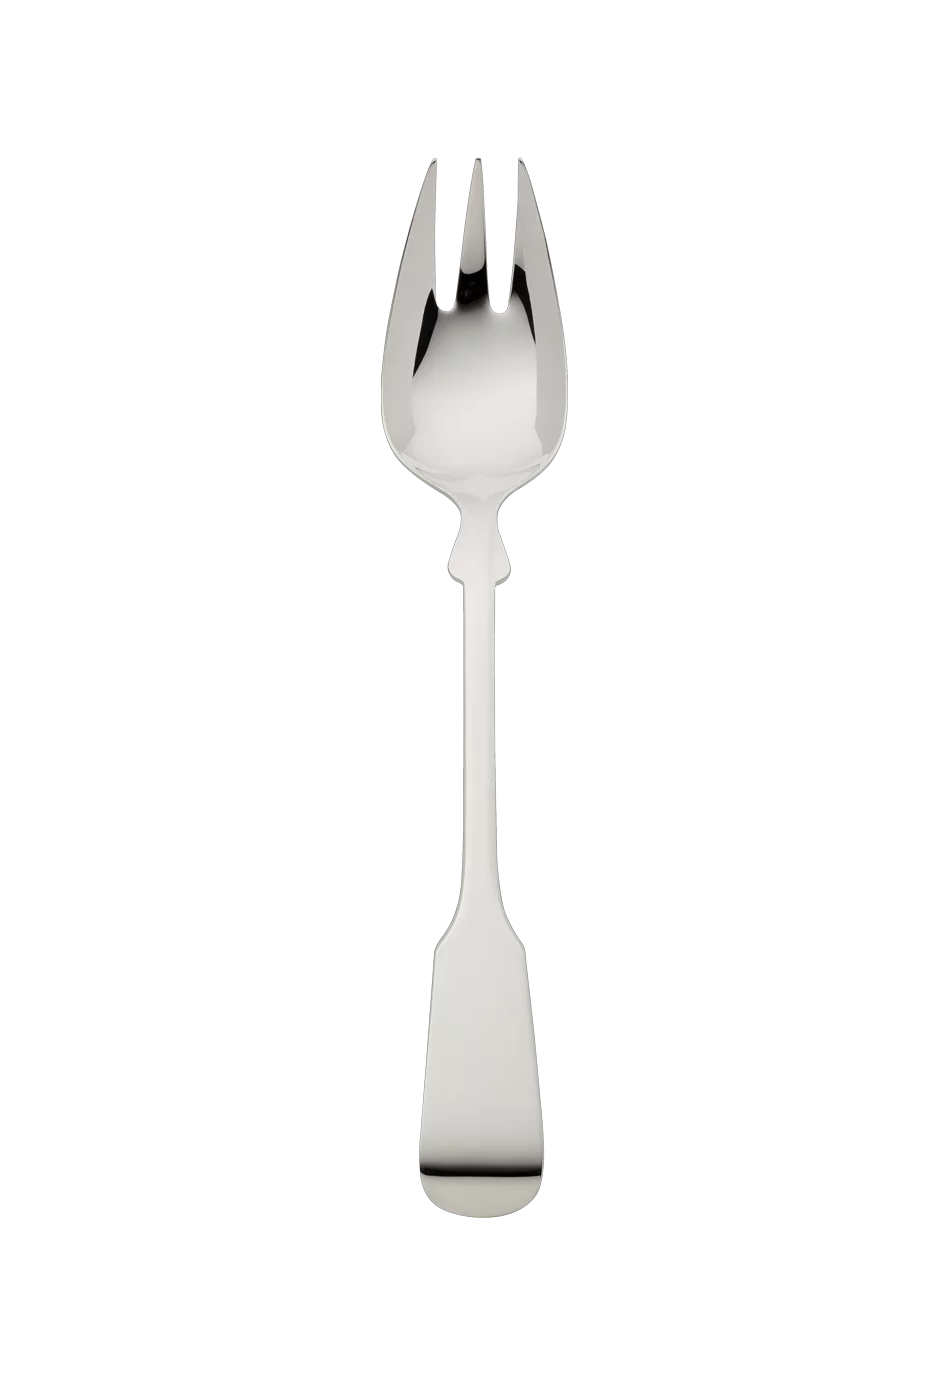 Spaten Vegetable Fork (150g massive silverplated)